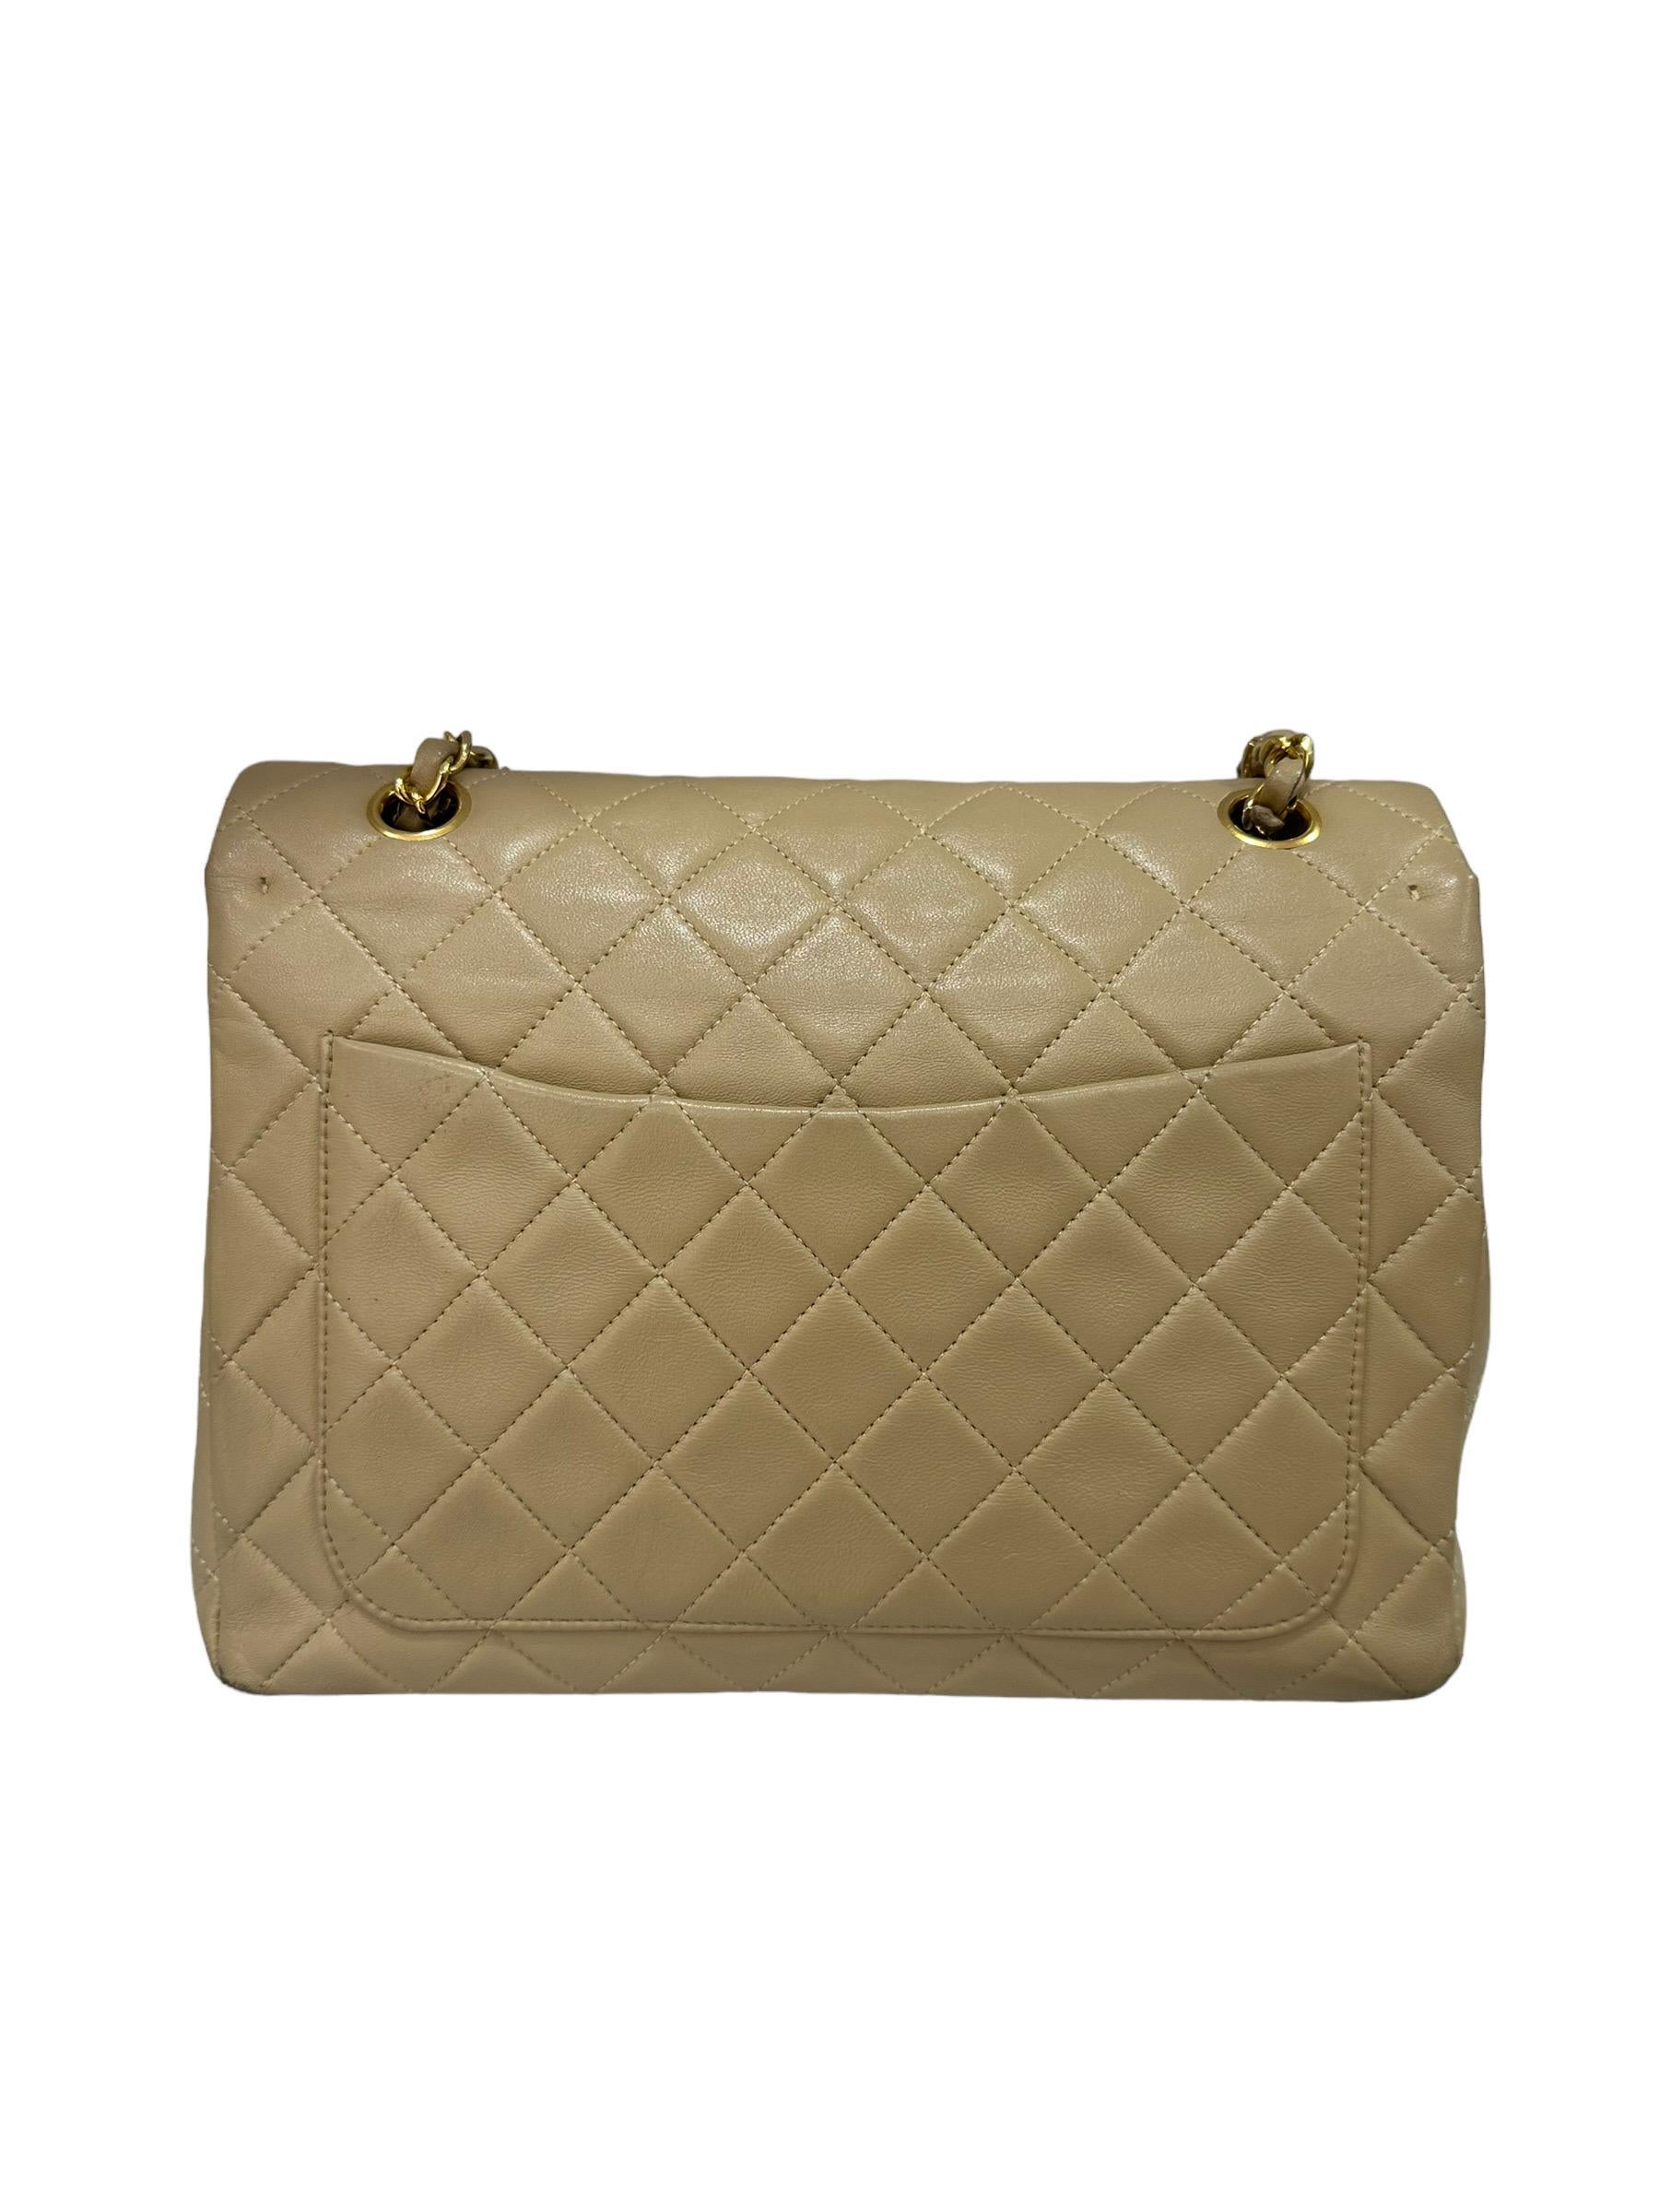 ‘90 Chanel Flap Vintage Beige Leather Shoulder Bag For Sale 3